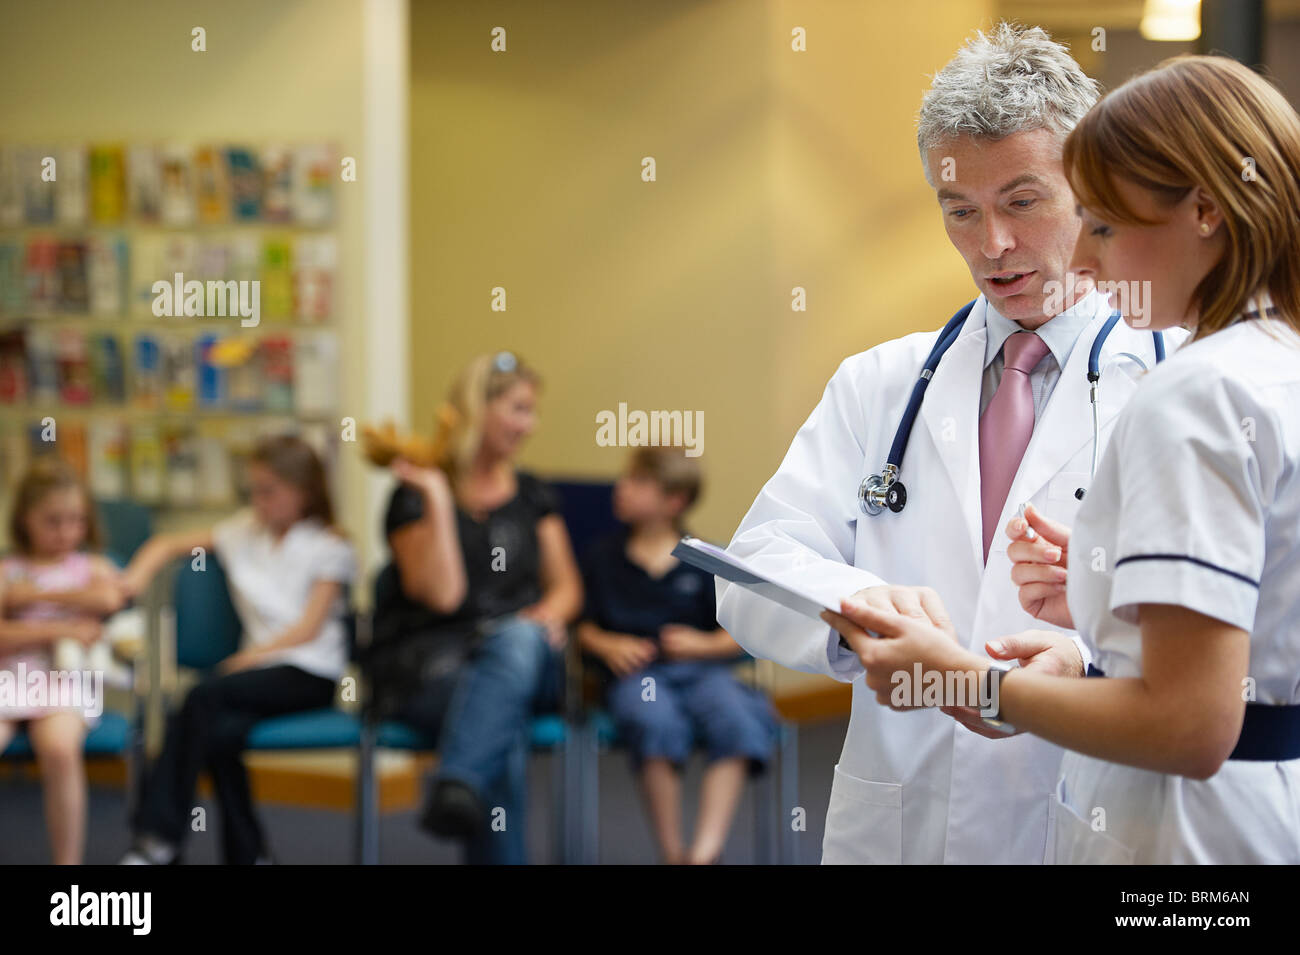 Un médico y una enfermera en el área de espera Foto de stock